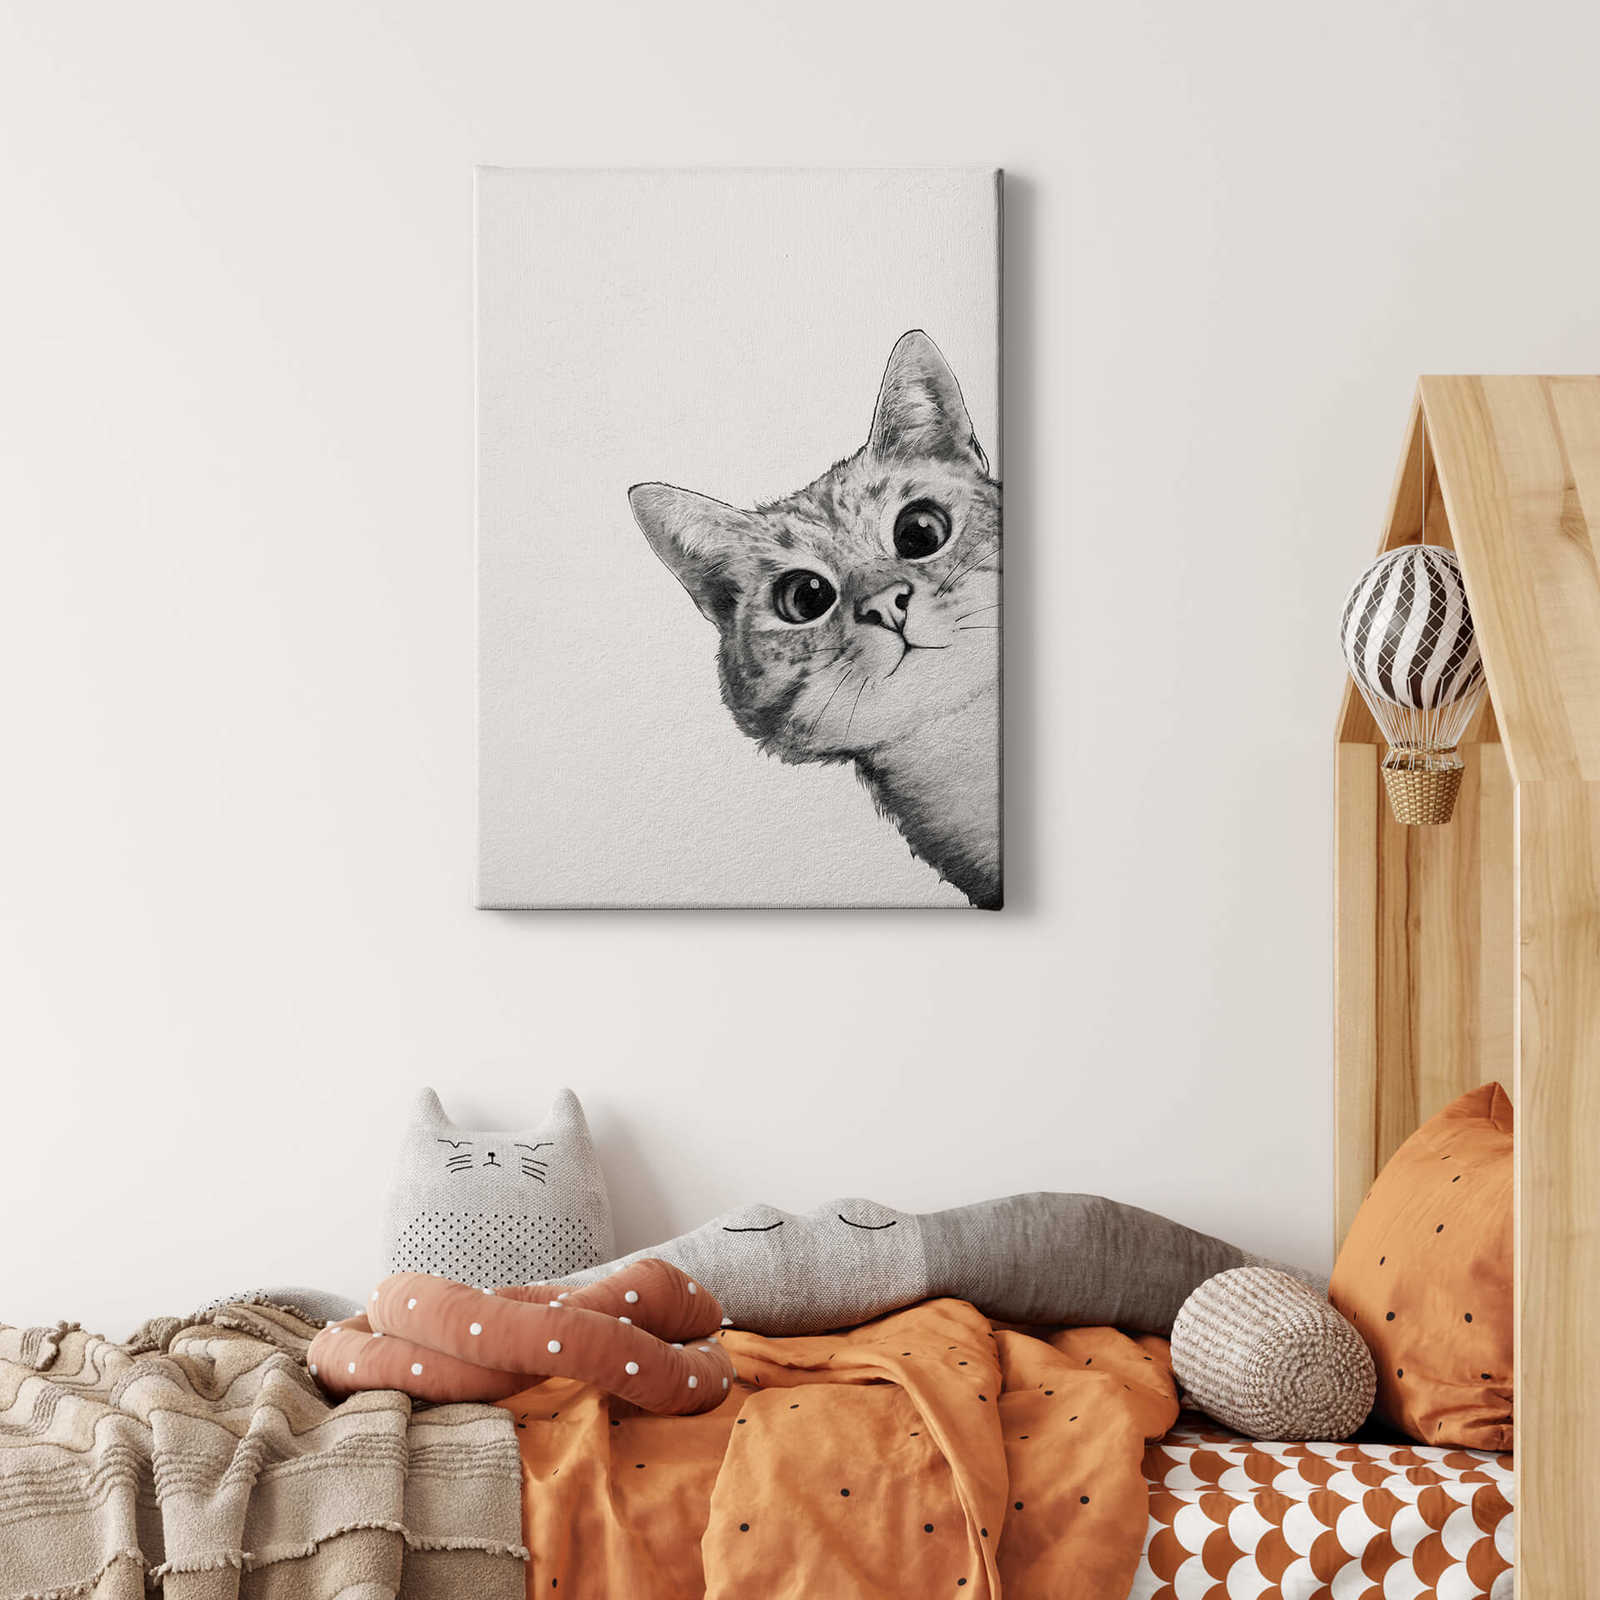             Quadro su tela "Sneaky Cat" di Graves, gatto in bianco e nero - 0,50 m x 0,70 m
        